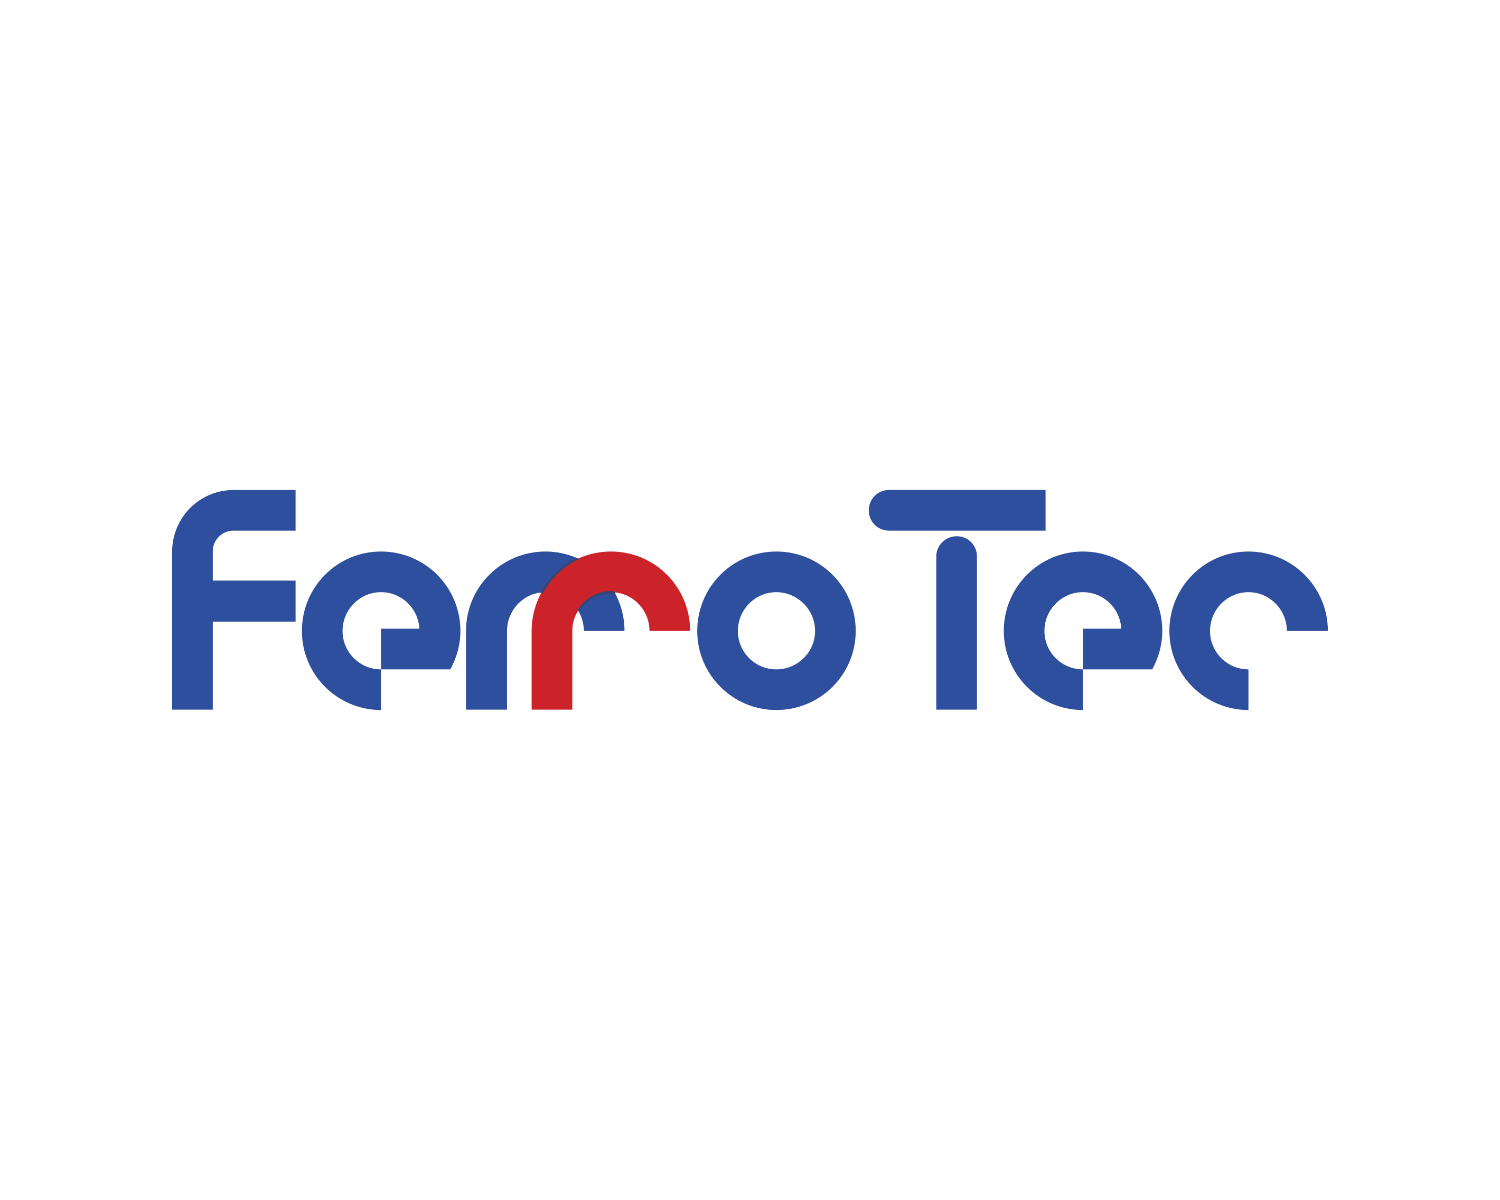 FerroTec